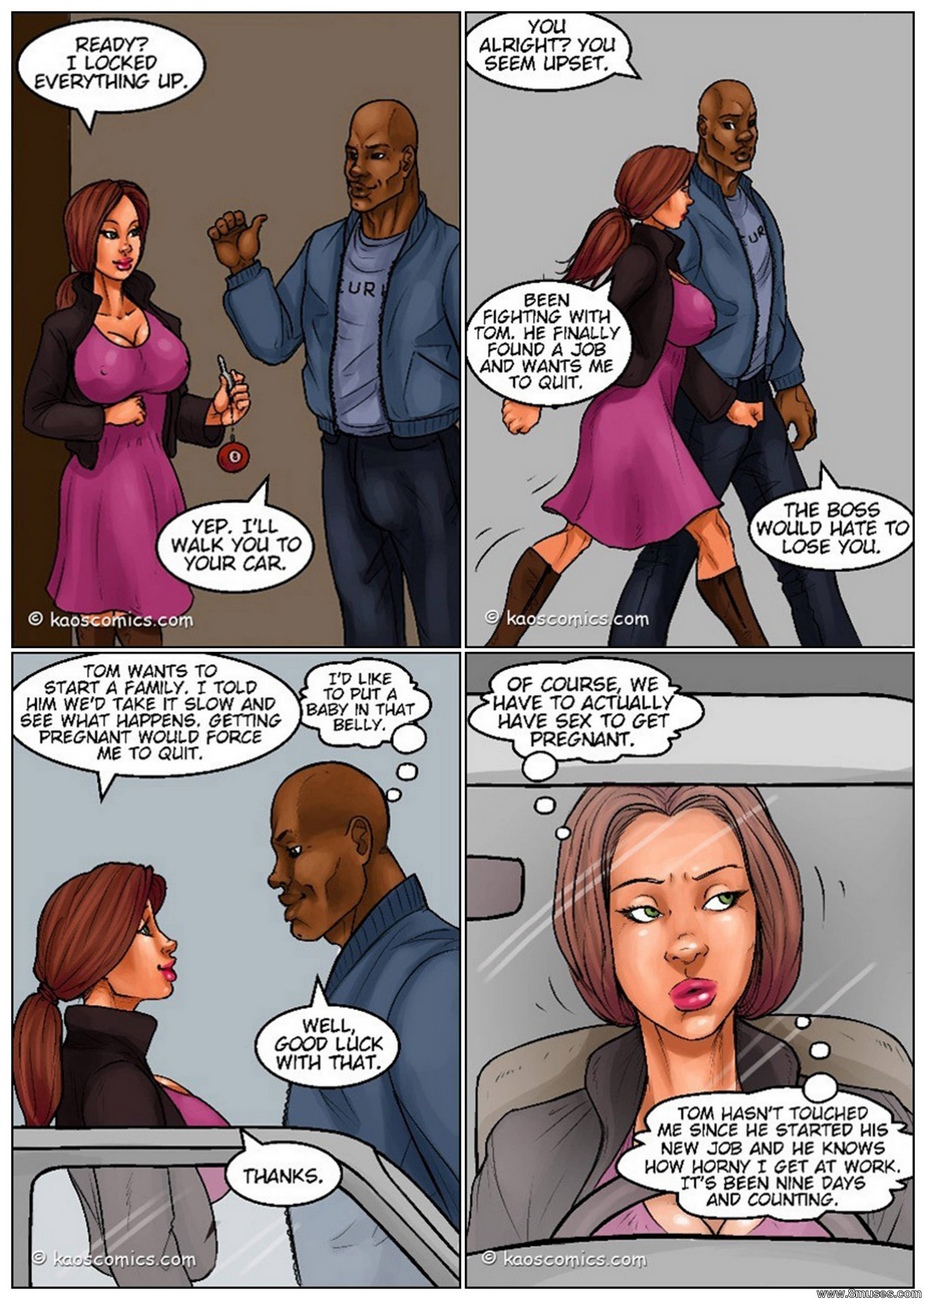 Sharing Wife Interracial Pregnant Comics | Niche Top Mature